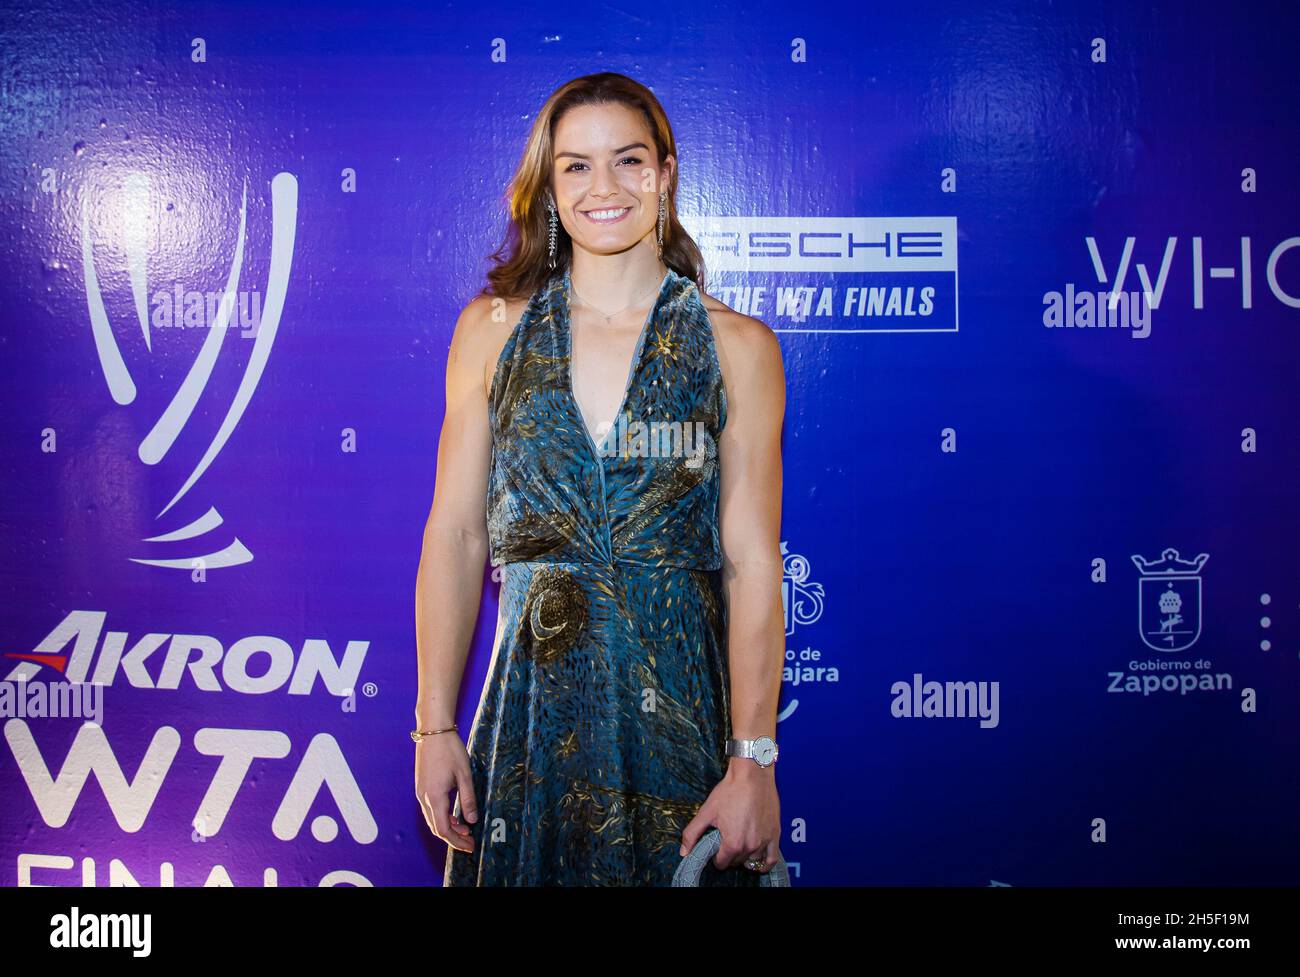 Maria Sakkari aus Griechenland während der Ziehungszeremonie des WTA-Finals von Akron 2021 am 8. November 2021 in Guadalajara, Mexiko - Foto: Rob Prange/DPPI/LiveMedia Stockfoto